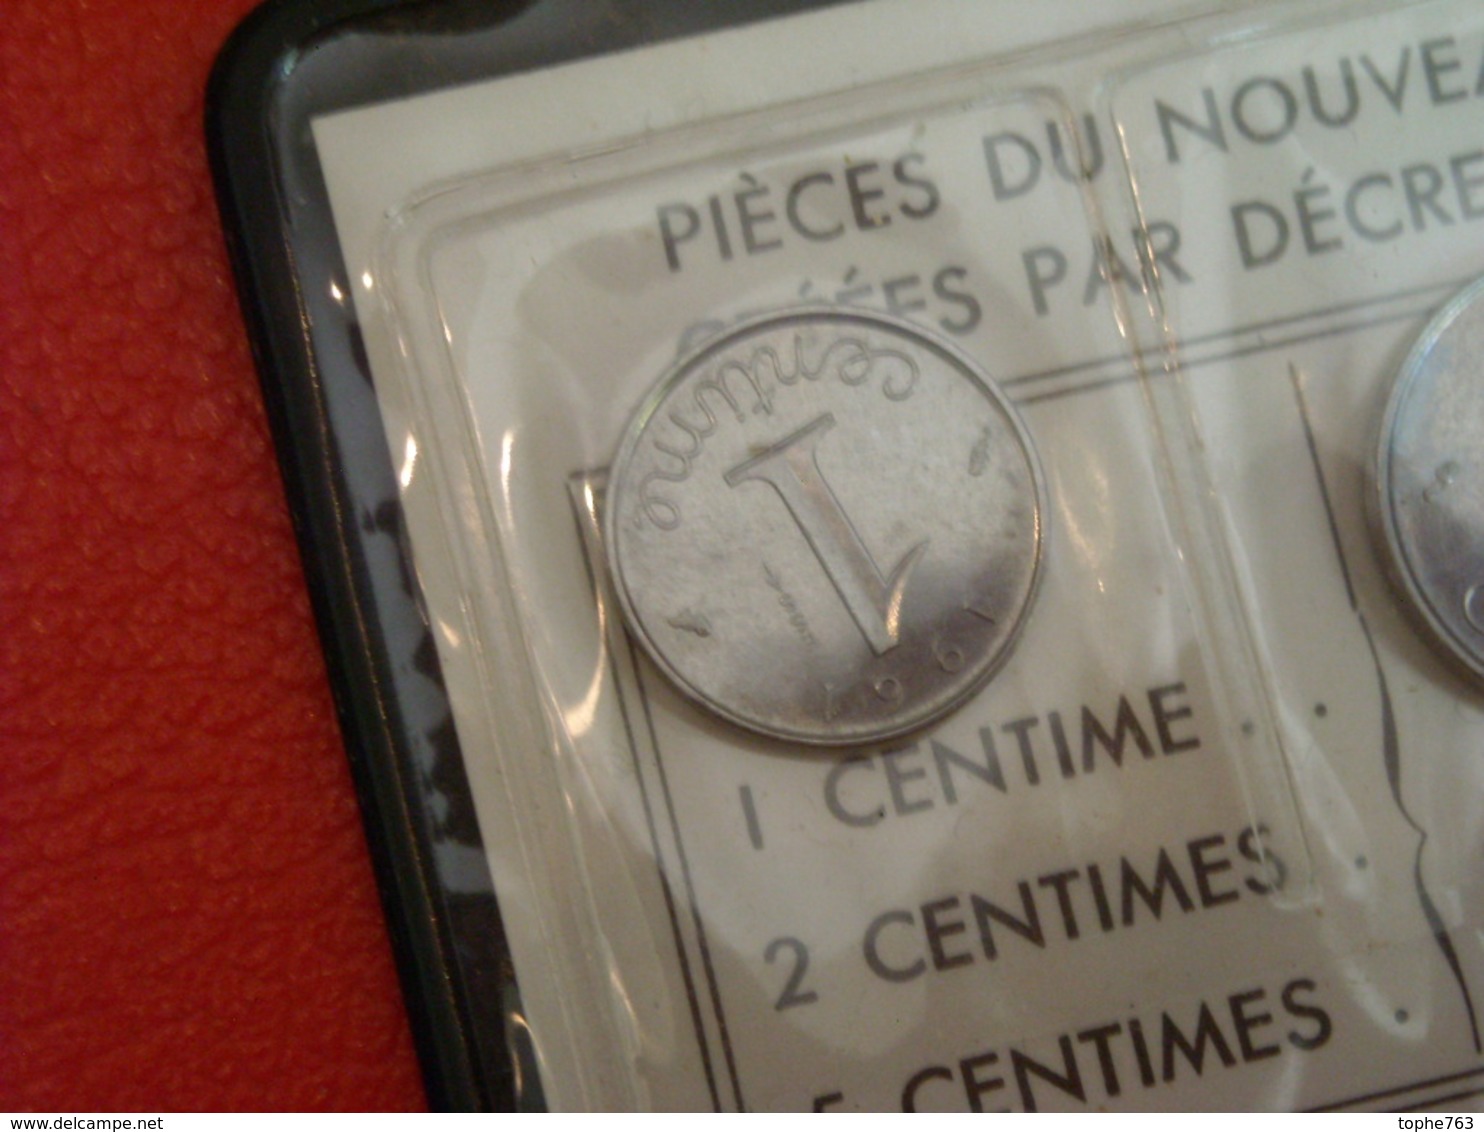 France - ESSAI - 1 Centime , 2 Centimes et 5 Centimes 1961 , Ecrin d'origine Monnaie de Paris